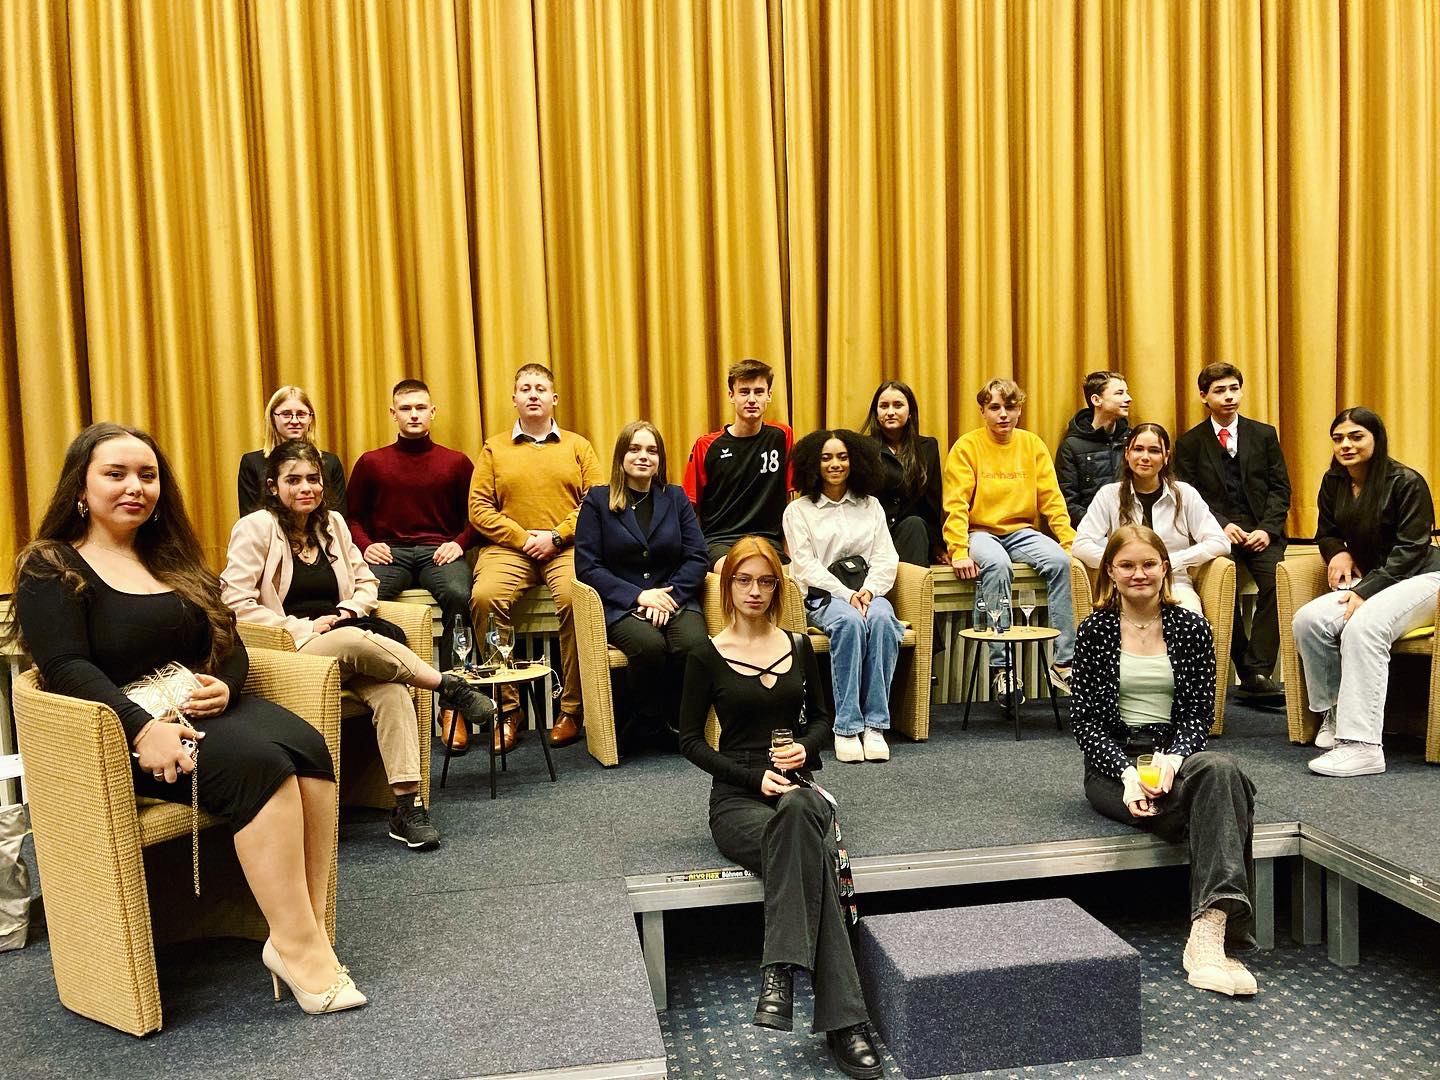 In dem Bild sieht man 16 Jugendliche, die Mitglieder des Jugendparlaments sind. Sie sitzen auf einer Bühne, am Bühnenrand oder auf Stühlen auf der Bühne. Hinter Ihnen ist ein gelber Vorhang zu sehen.